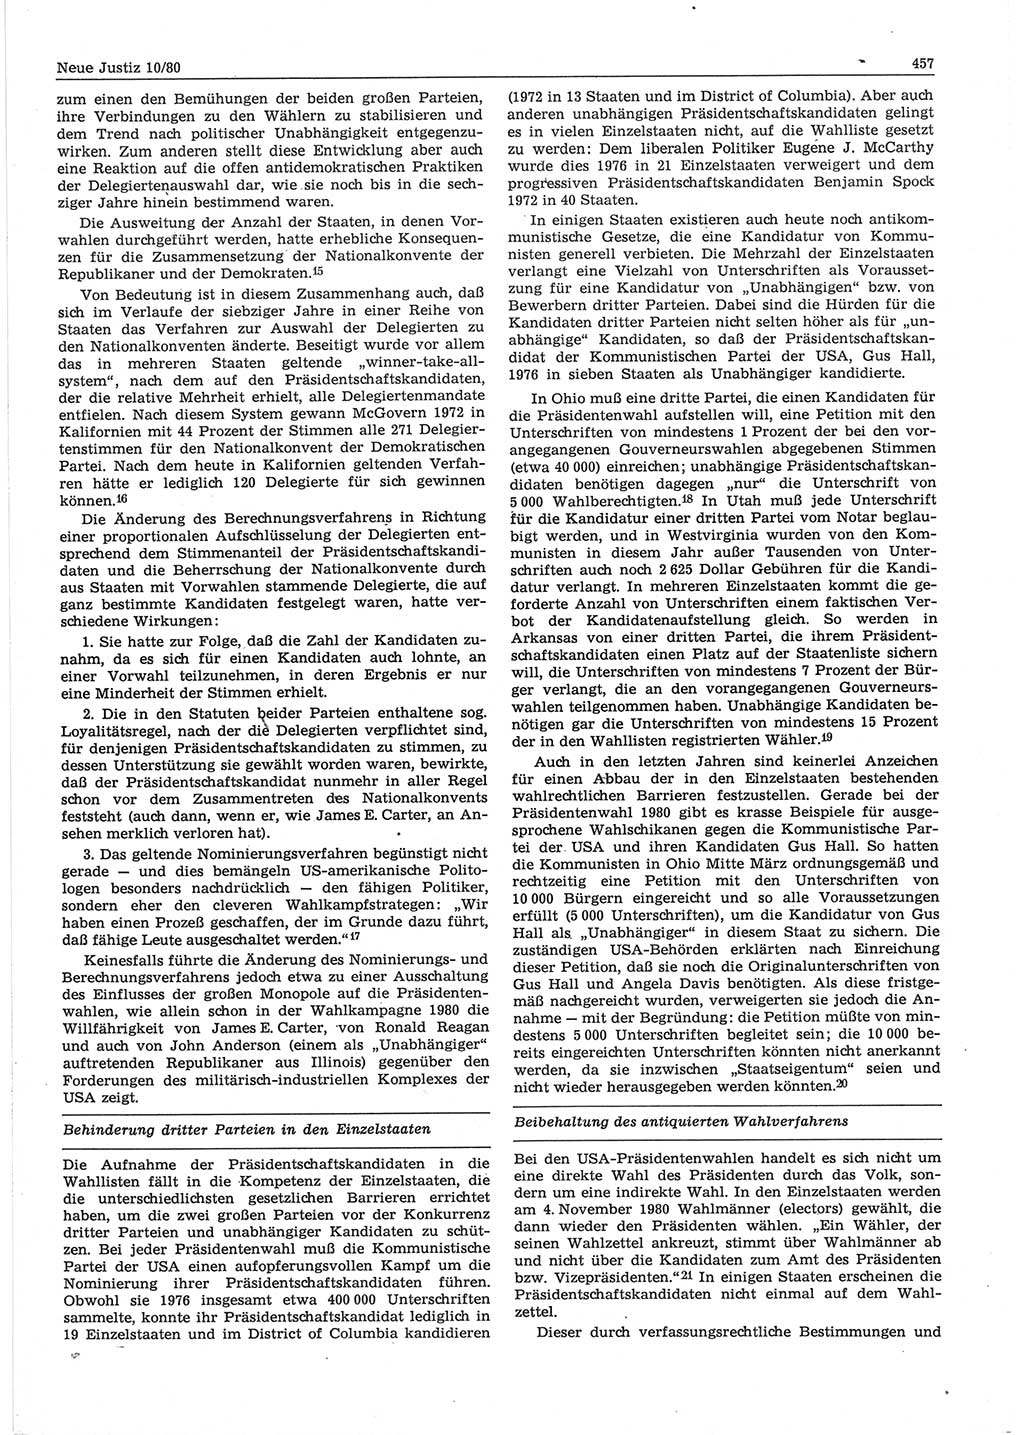 Neue Justiz (NJ), Zeitschrift für sozialistisches Recht und Gesetzlichkeit [Deutsche Demokratische Republik (DDR)], 34. Jahrgang 1980, Seite 457 (NJ DDR 1980, S. 457)